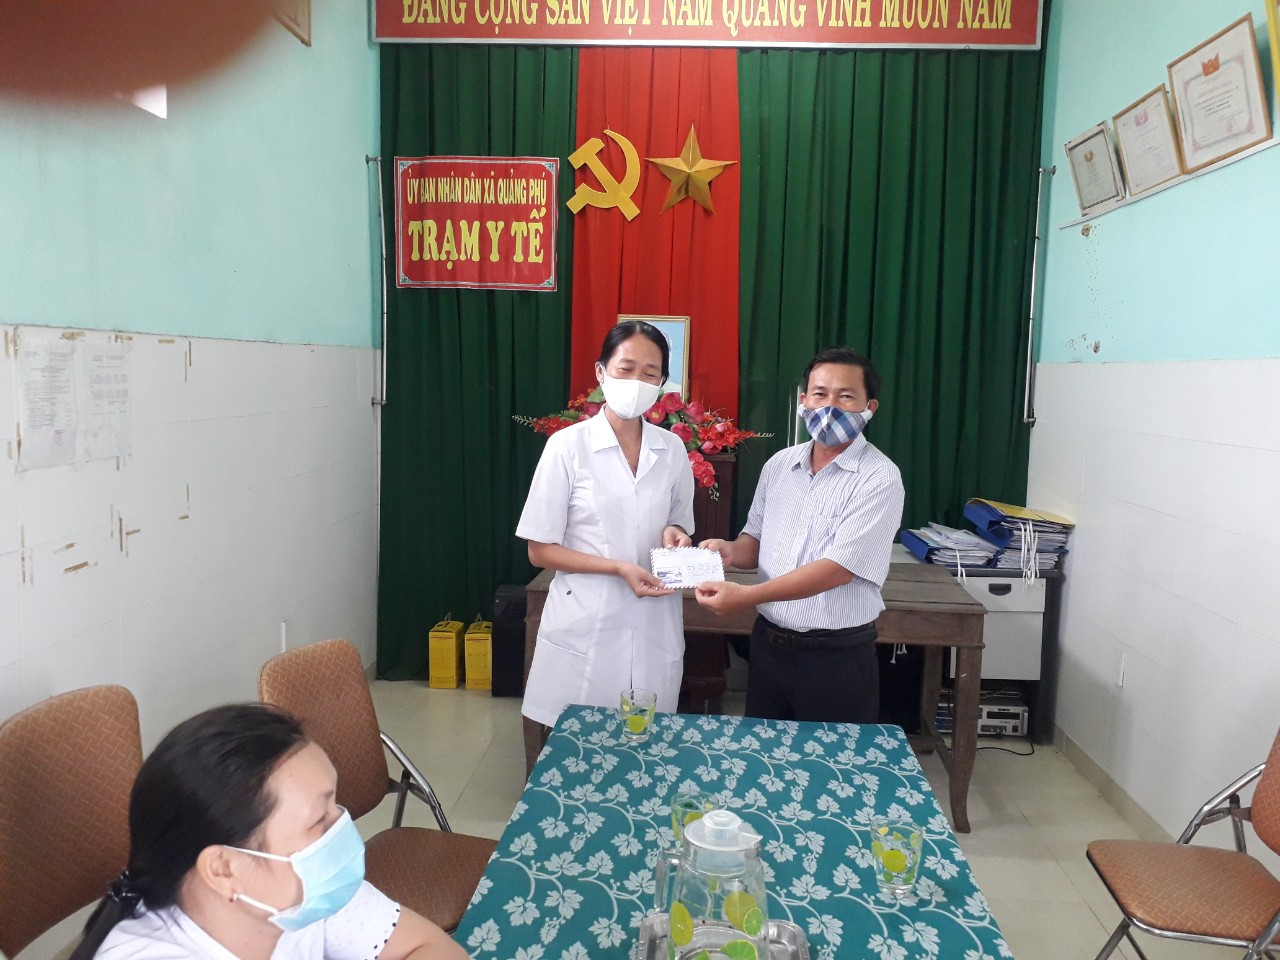 Hình ảnh: Lãnh đạo xã tặng quà đội ngũ cán bộ Trạm Y tế xã Quảng Phú.